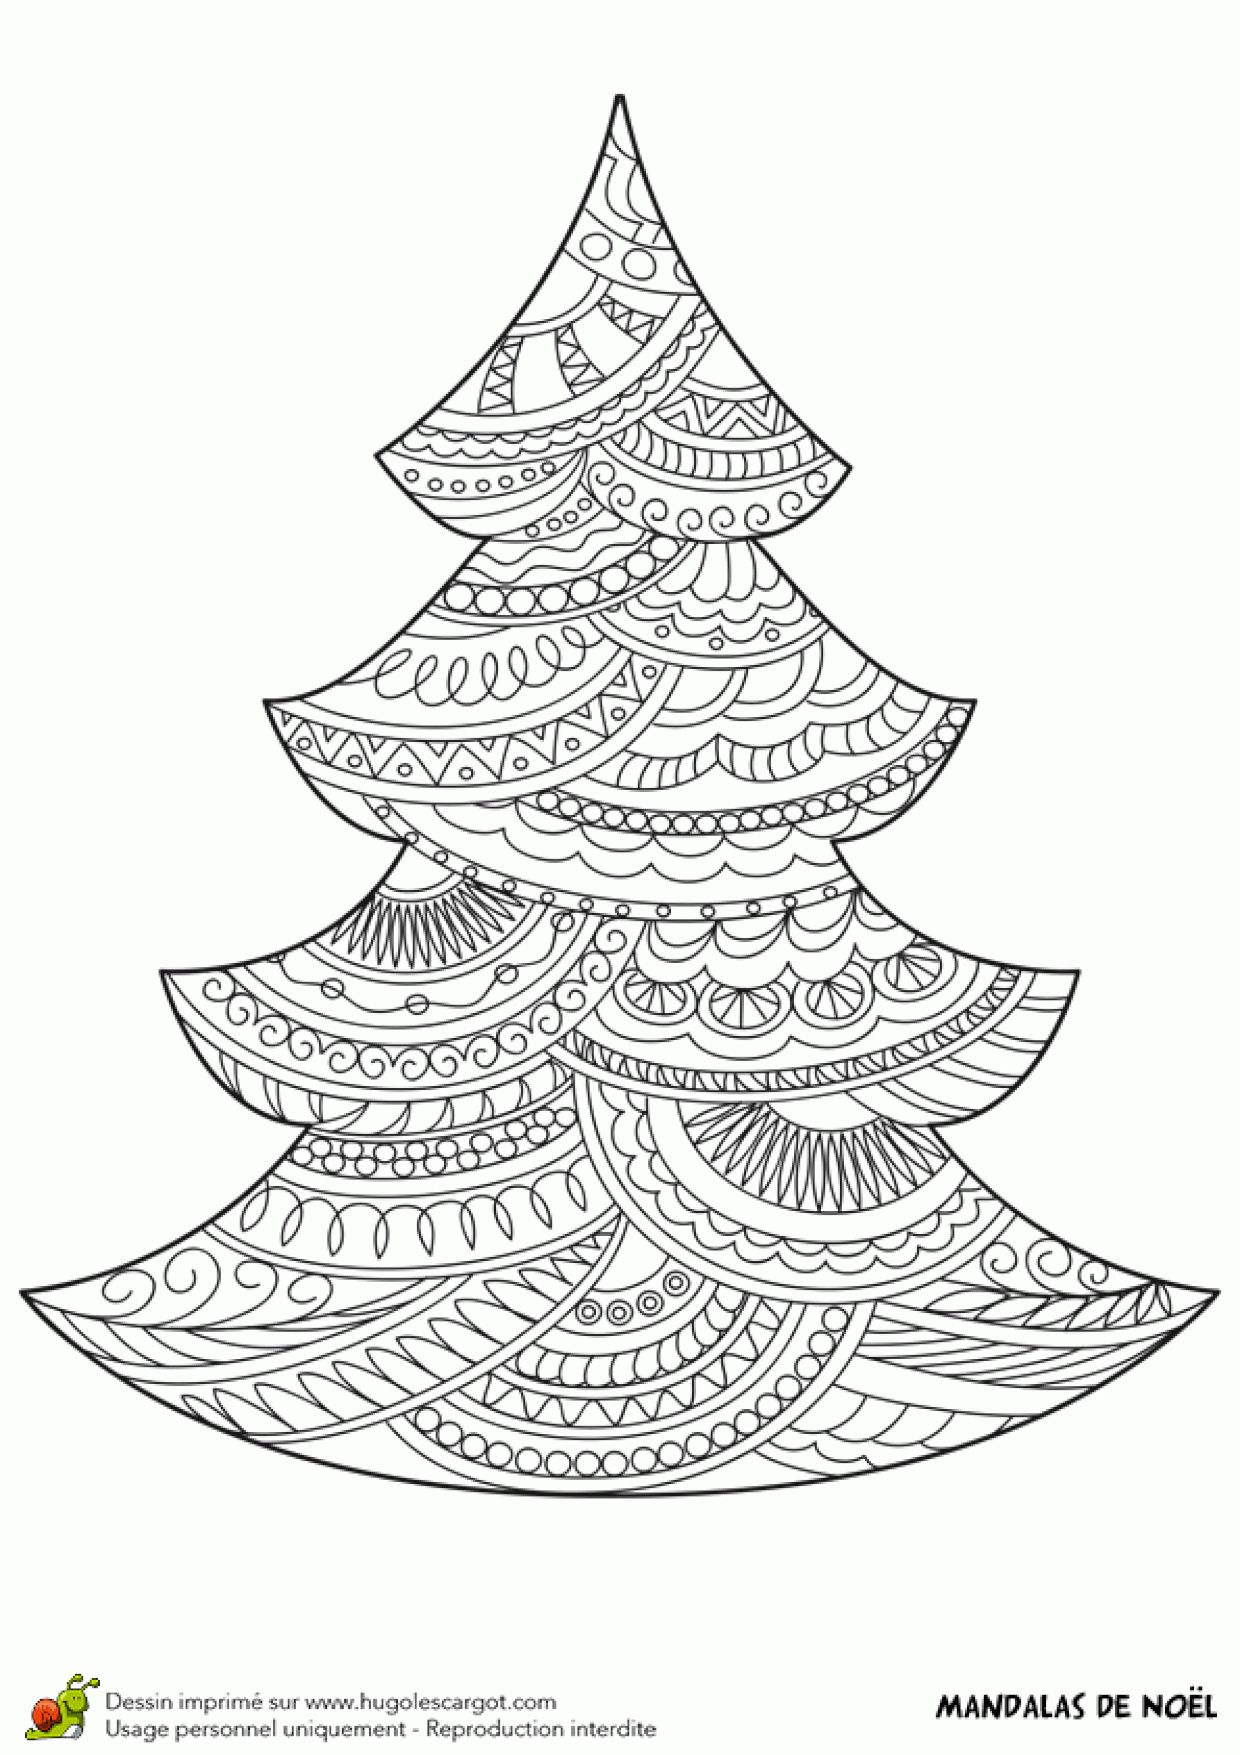 Dessin À Colorier D&amp;#039;un Mandala Sapin De Noël dedans Coloriage De Sapin De Noel A Imprimer Gratuit 